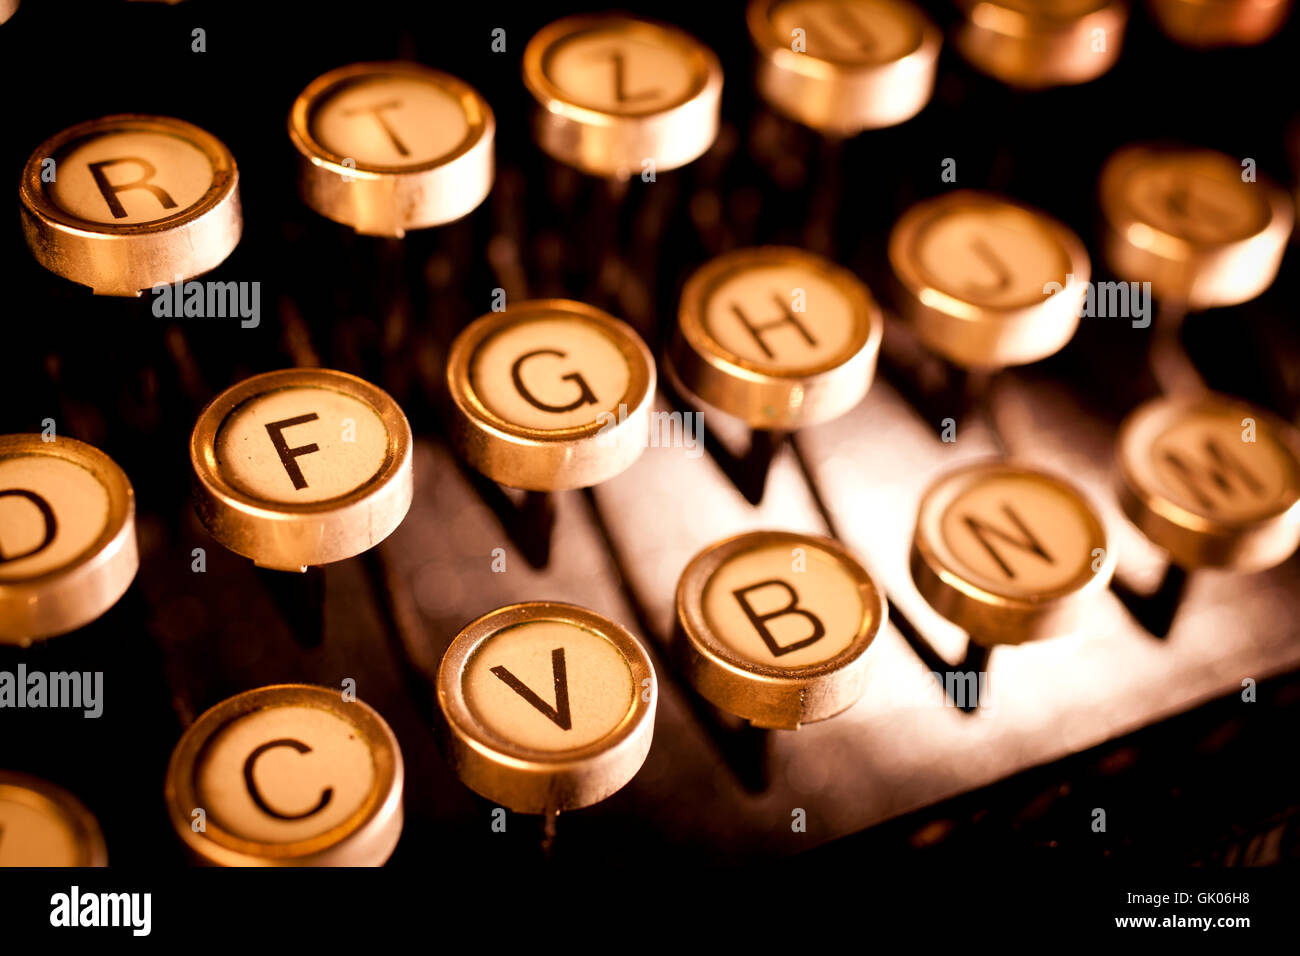 keys of an old typewriter Stock Photo